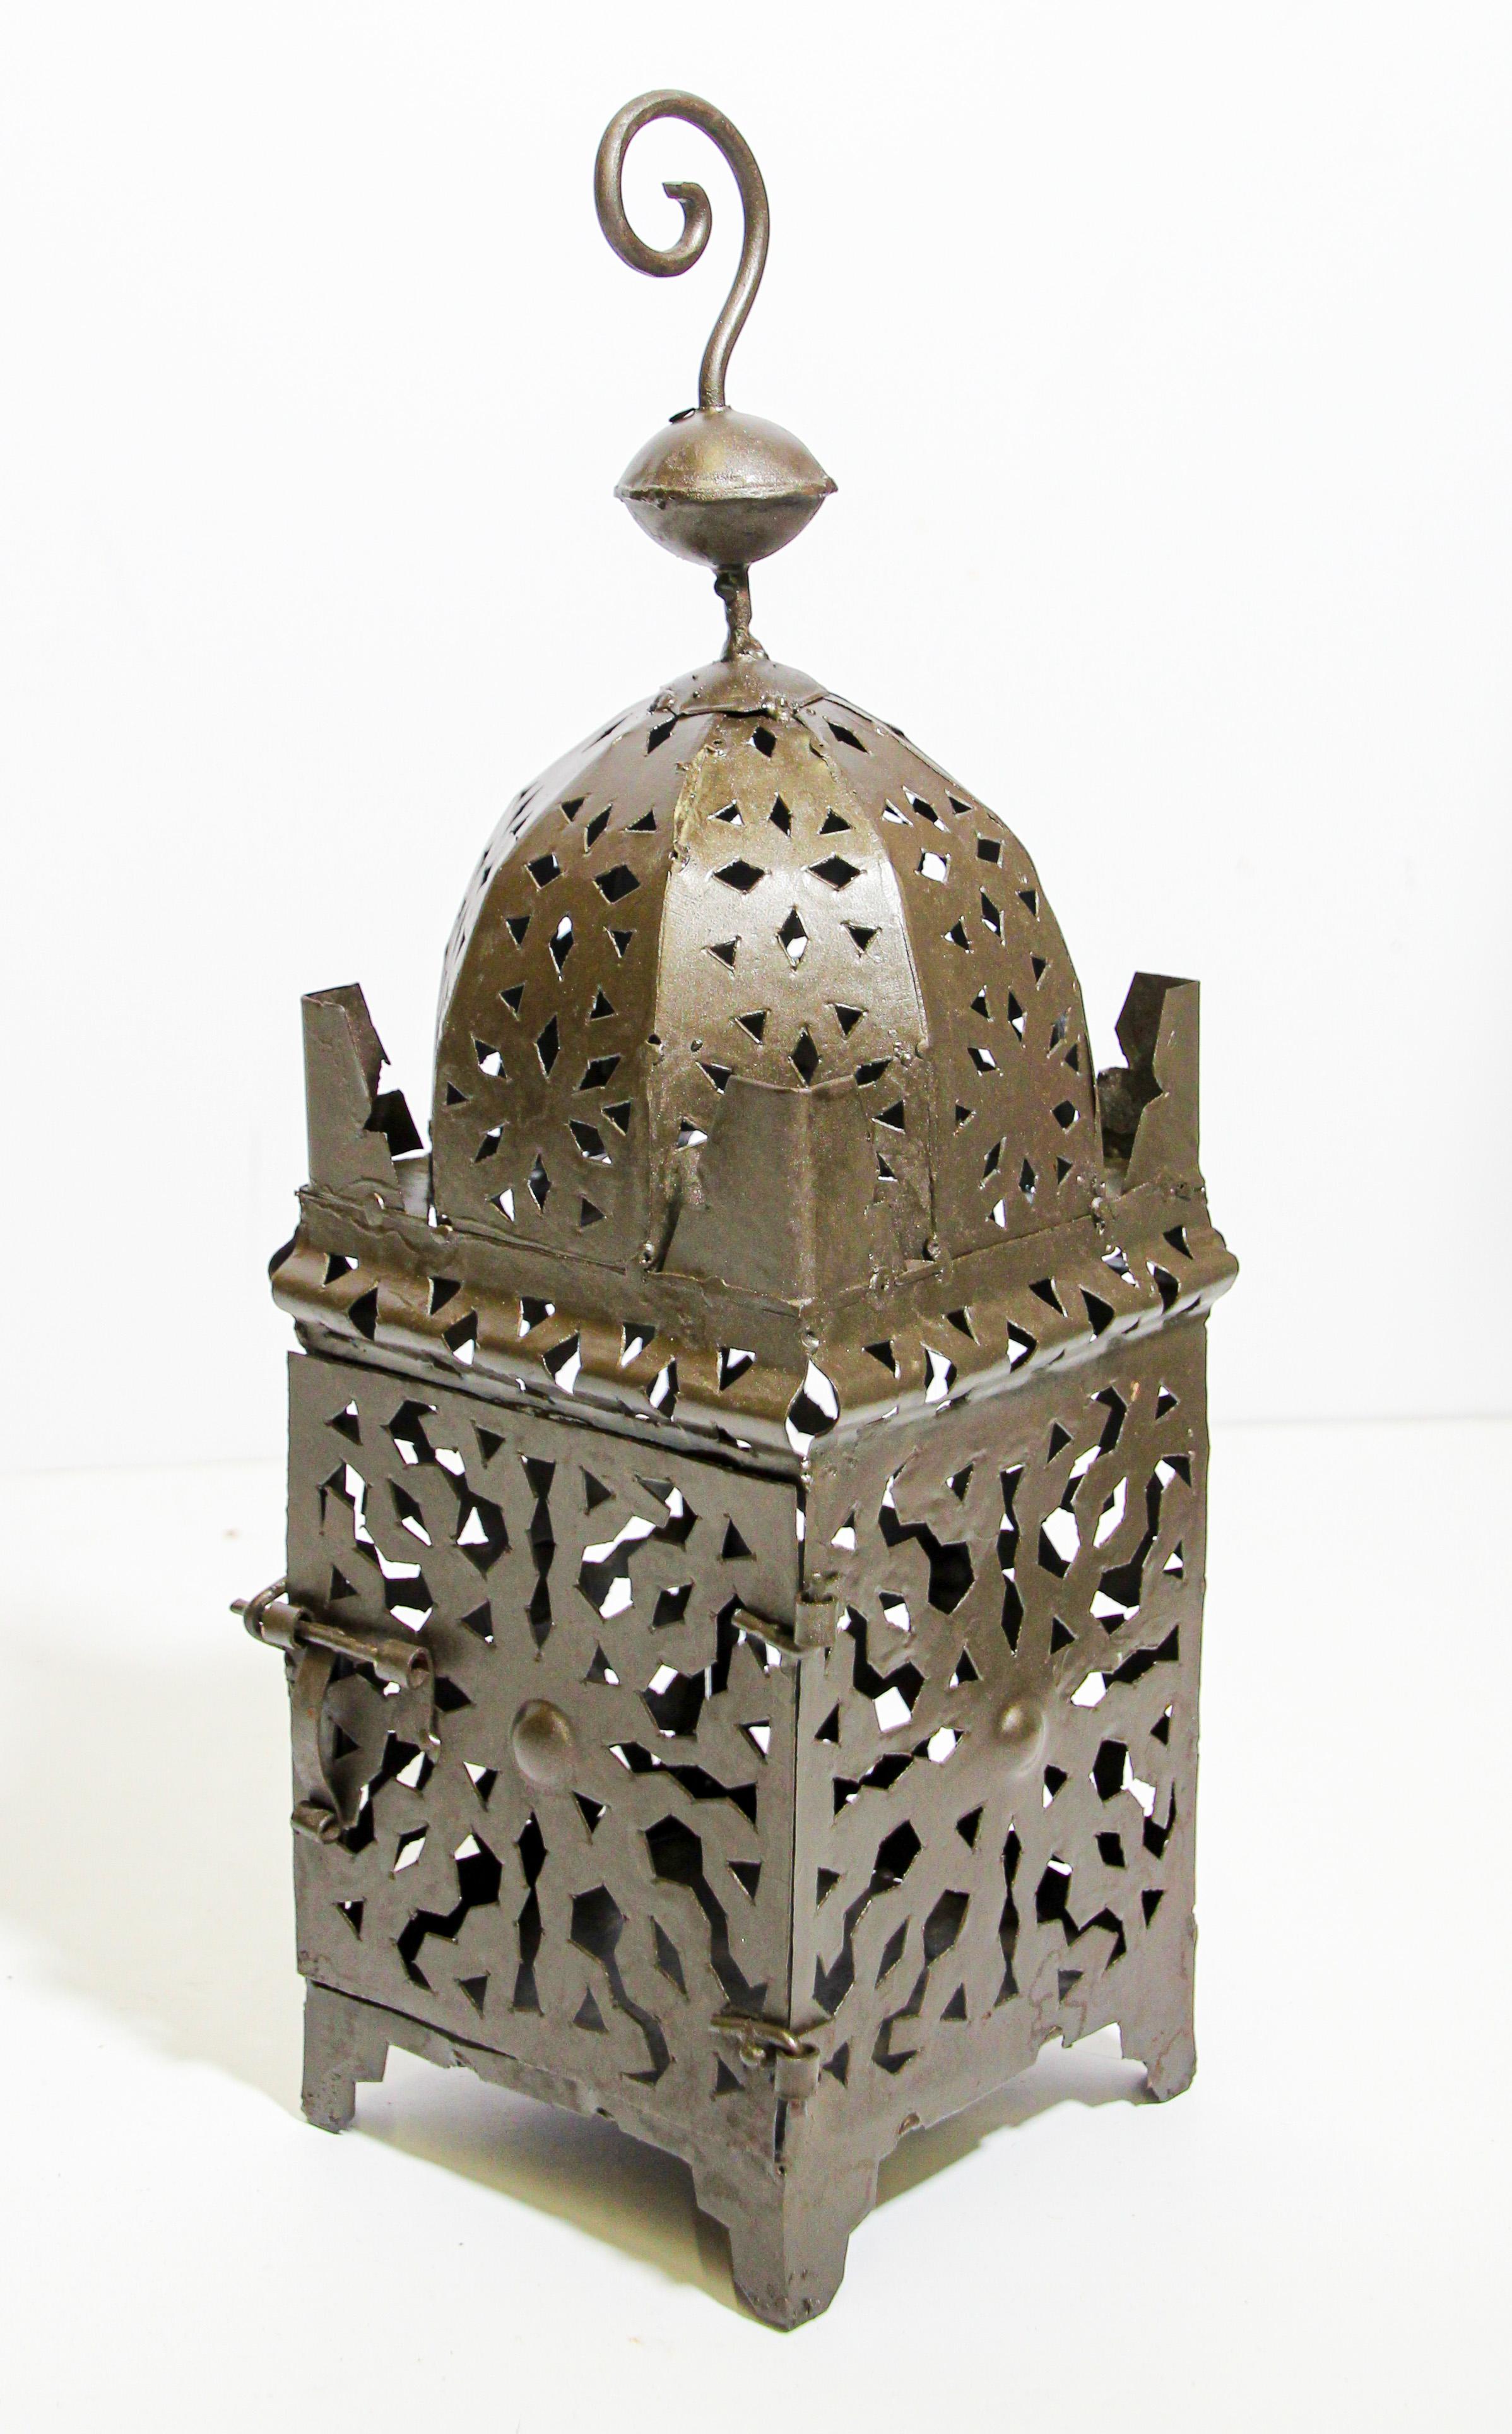 Marokkanische Kerzenlaterne aus Metall mit durchbrochener Metallarbeit im maurischen Design.
Hurricane-Kerzenlampe, handgefertigt in Marokko von Kunsthandwerkern, handgeschnittenes und gehämmertes Metall mit maurischem Design, vorne offen für die